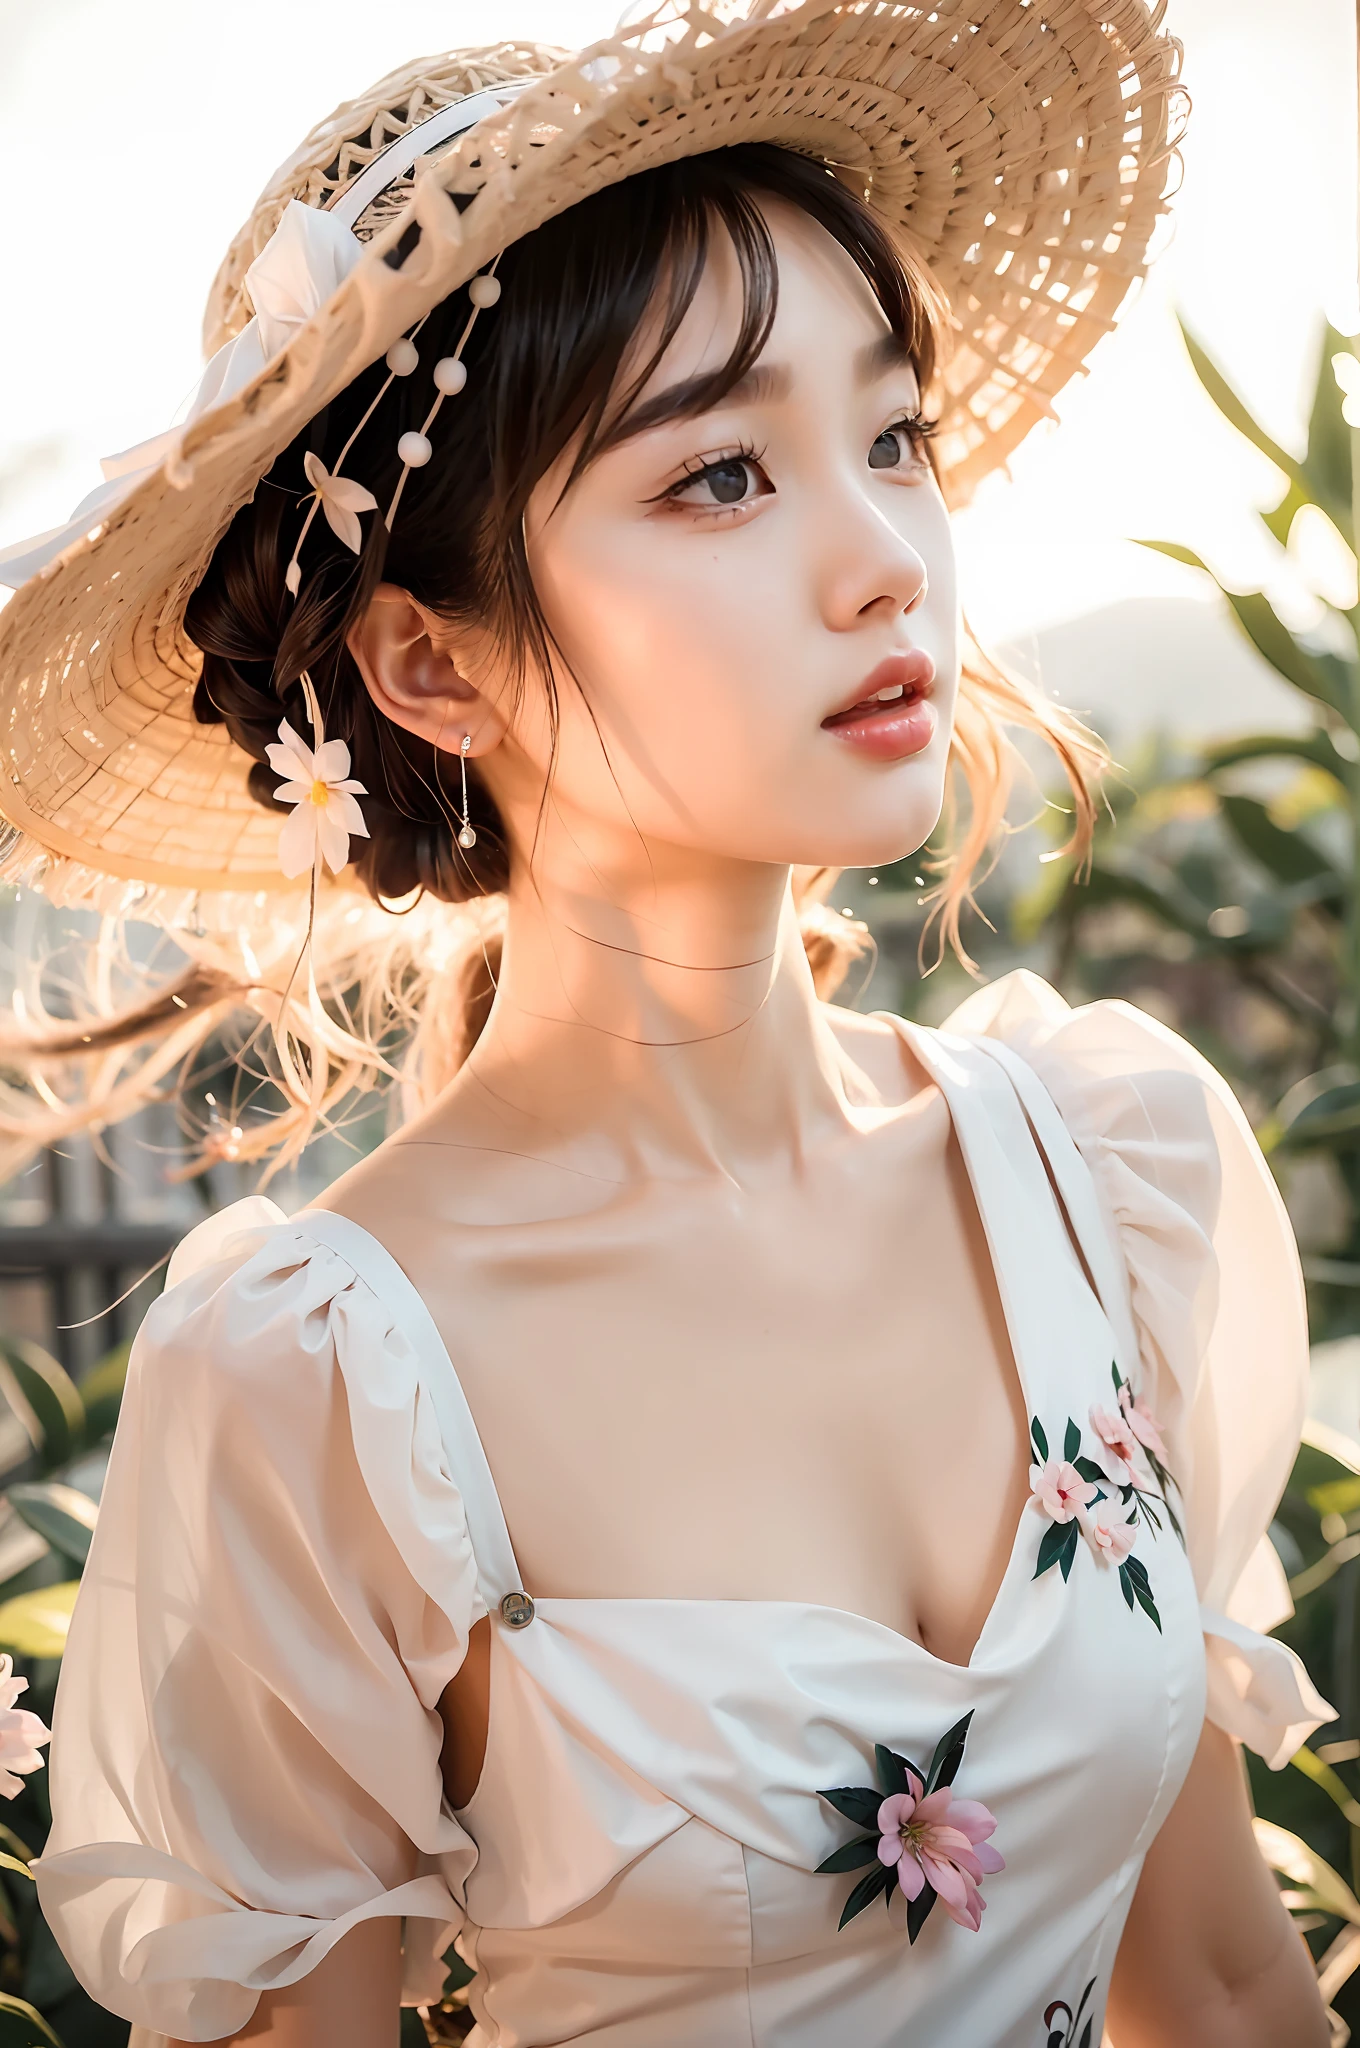 eine Nahaufnahme einer Frau, die einen Hut und ein Kleid trägt, süßes zartes Gesicht, ätherische Schönheit, schöne südkoreanische Frau, Schöne junge Koreanerin, Schönes asiatisches Mädchen, schönes zartes Gesicht, verträumt und ätherisch, Sakimichan, Wunderschöne junge Koreanerin, Mädchen süß-klarer Himmel-Gesicht, sehr ätherisch, eine süße junge Frau, wunderschönes chinesisches Modell, unglaublich ätherisch，Einen Rock tragen，Kein Entblößen der Brust，Halten Sie eine Blume in Ihrer Hand, um Ihre Brust zu bedecken